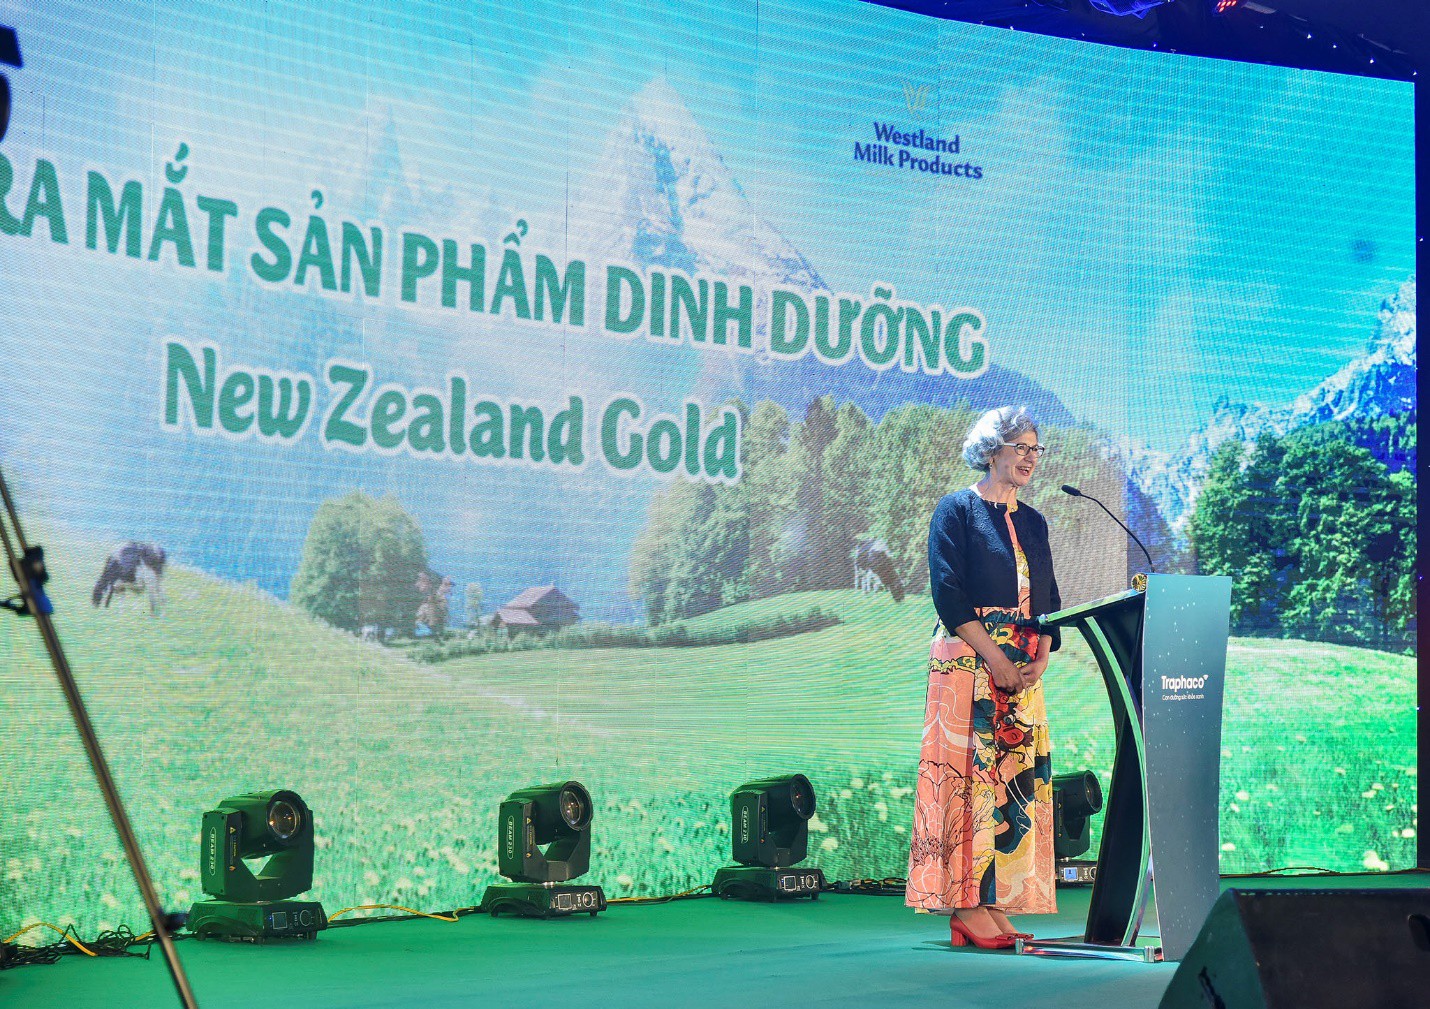 Thị trường sữa xuất hiện dòng sữa thiên nhiên từ New Zealand được nhãn dược uy tín hàng đầu Việt Nam bảo trợ chất lượng - Ảnh 1.